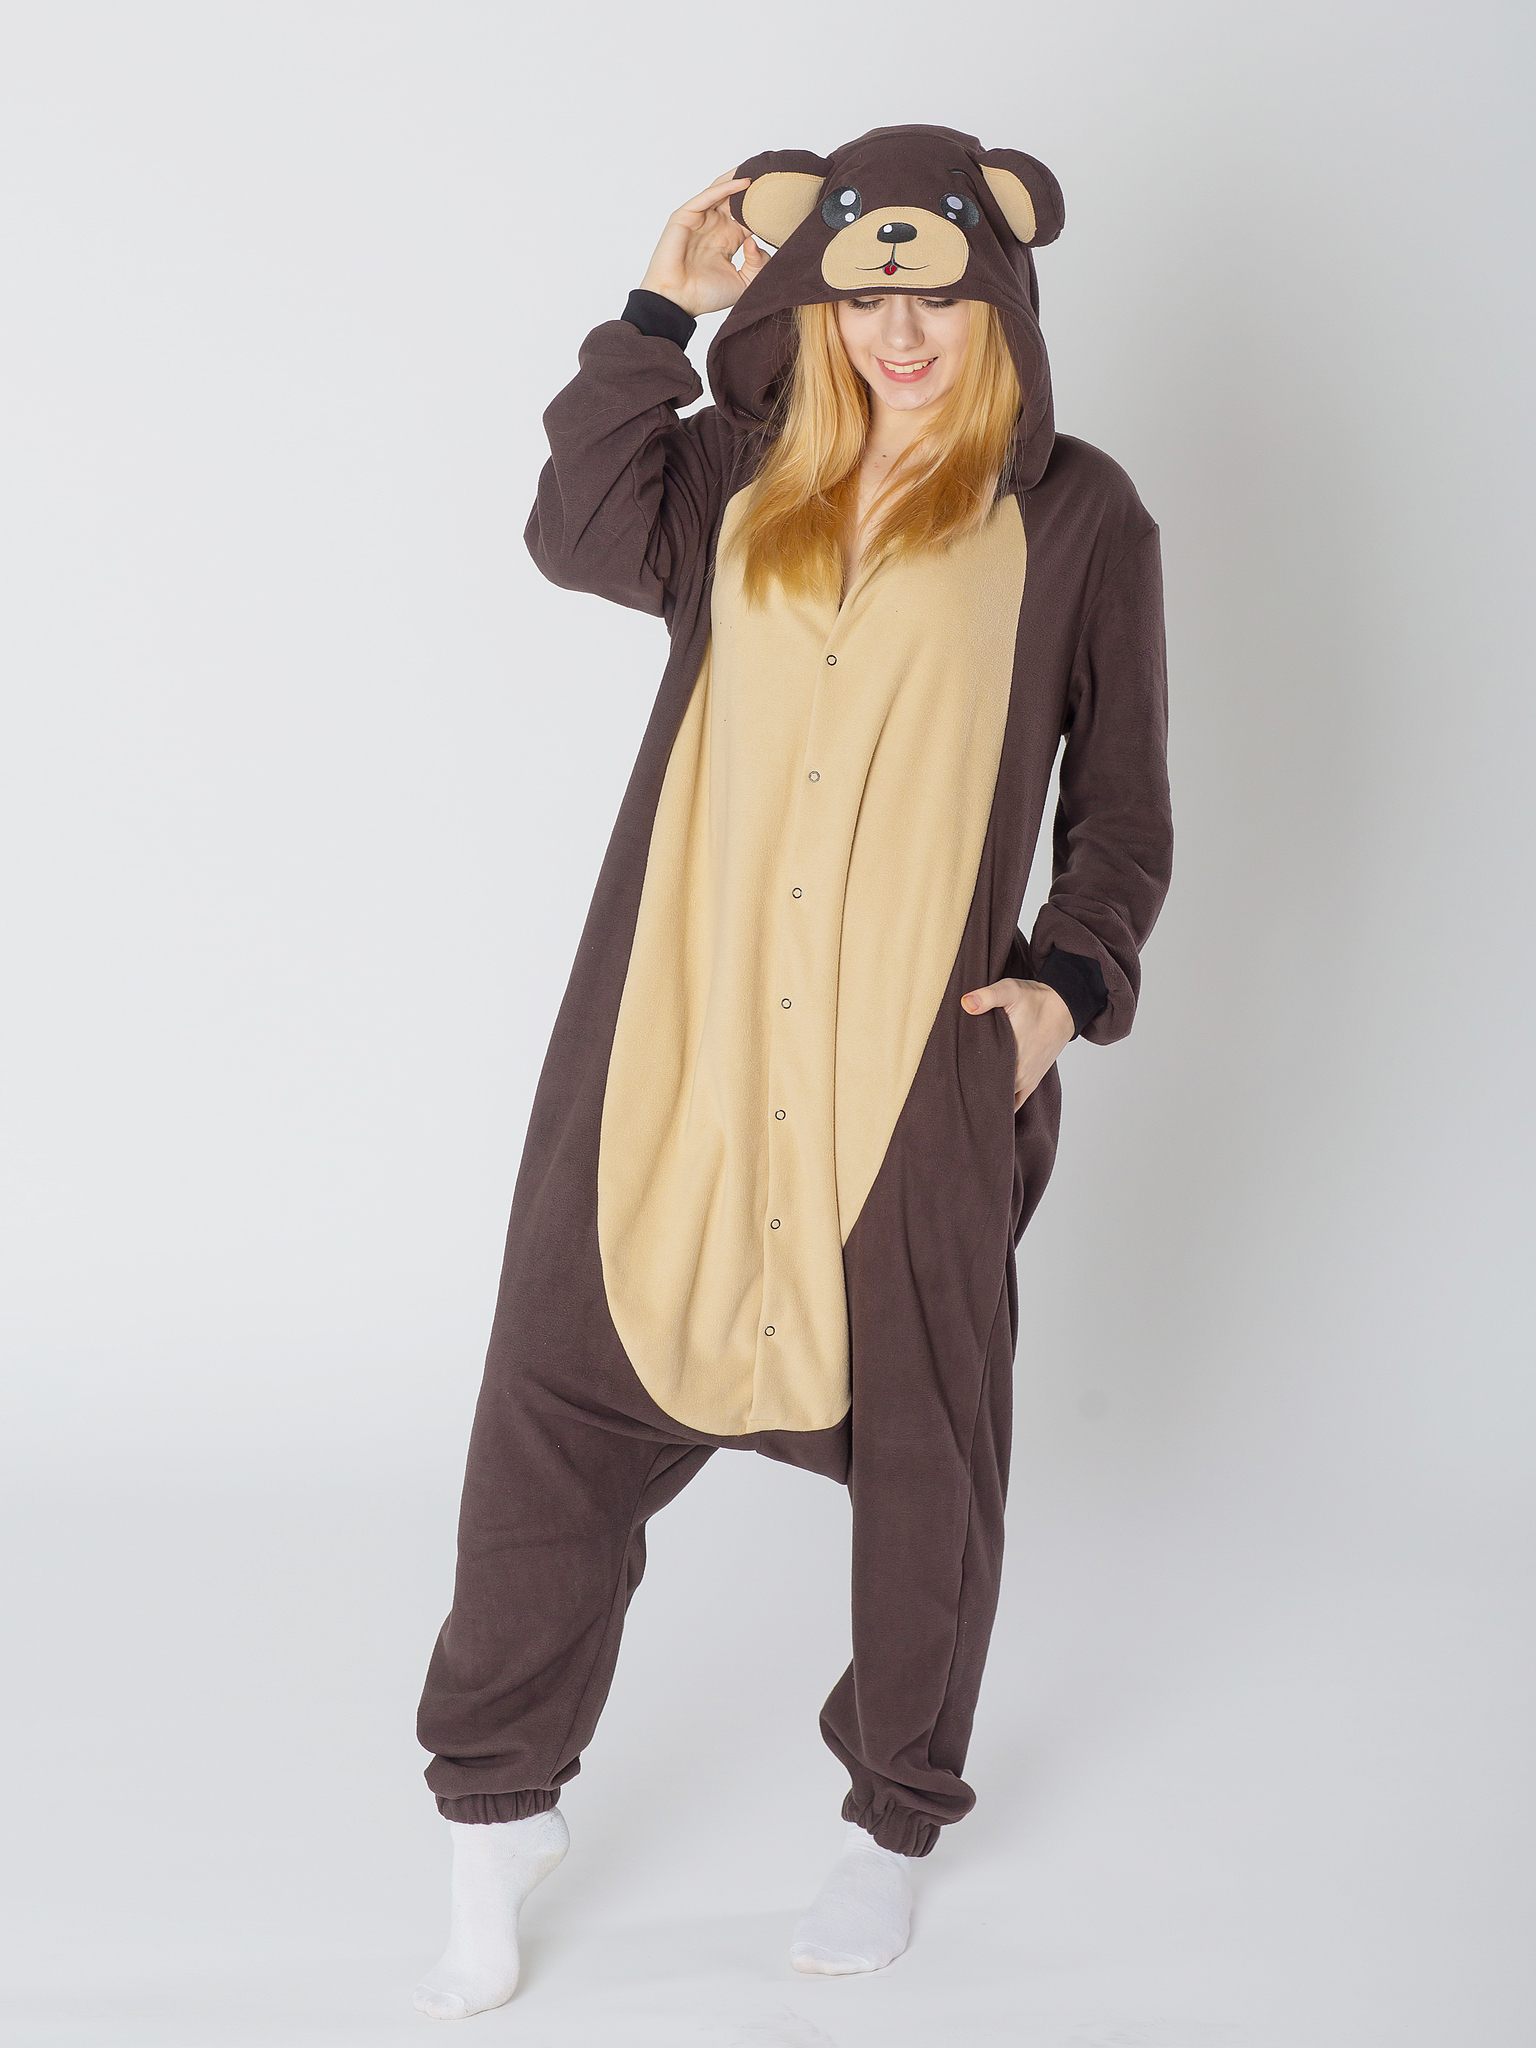 Купить пижамы кигуруми для детей и взрослых недорого в интернет-магазине Планета кигуруми